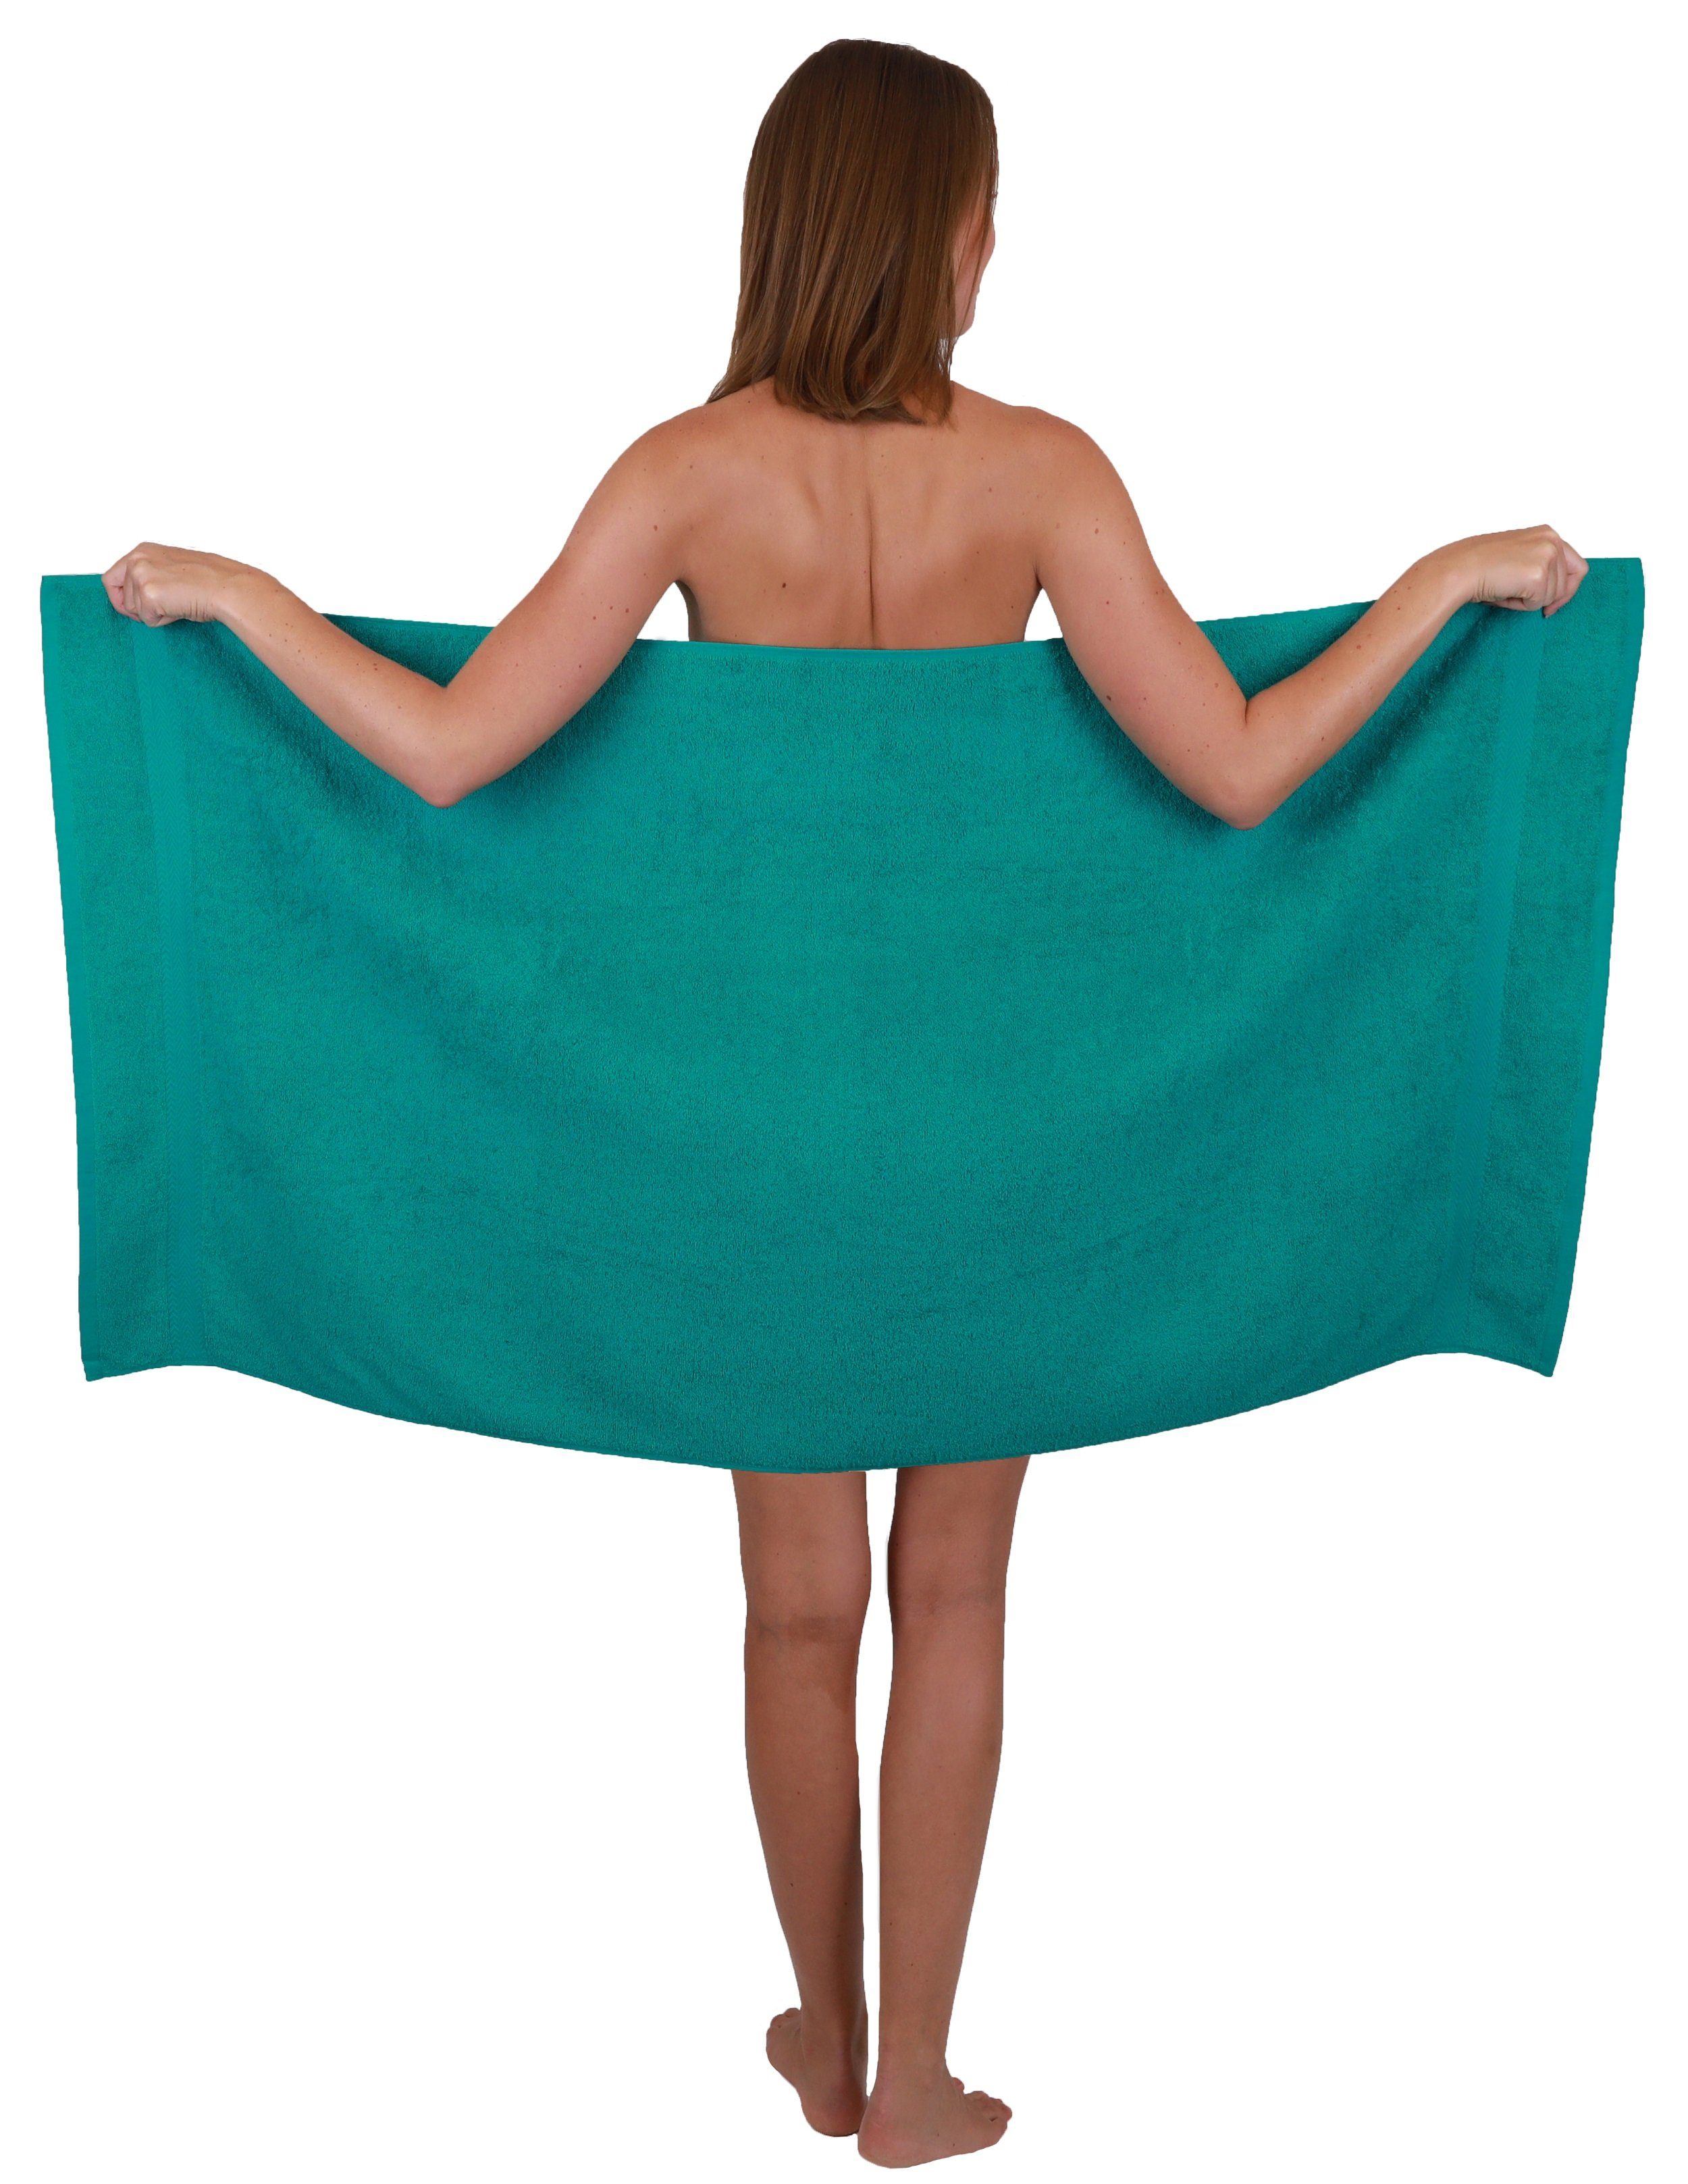 Betz Handtuch Set 6-TLG. Farbe 2 smaragdgrün, Silbergrau Handtuch-Set 100% und Duschtücher 4 Premium 100% Handtücher Baumwolle Baumwolle